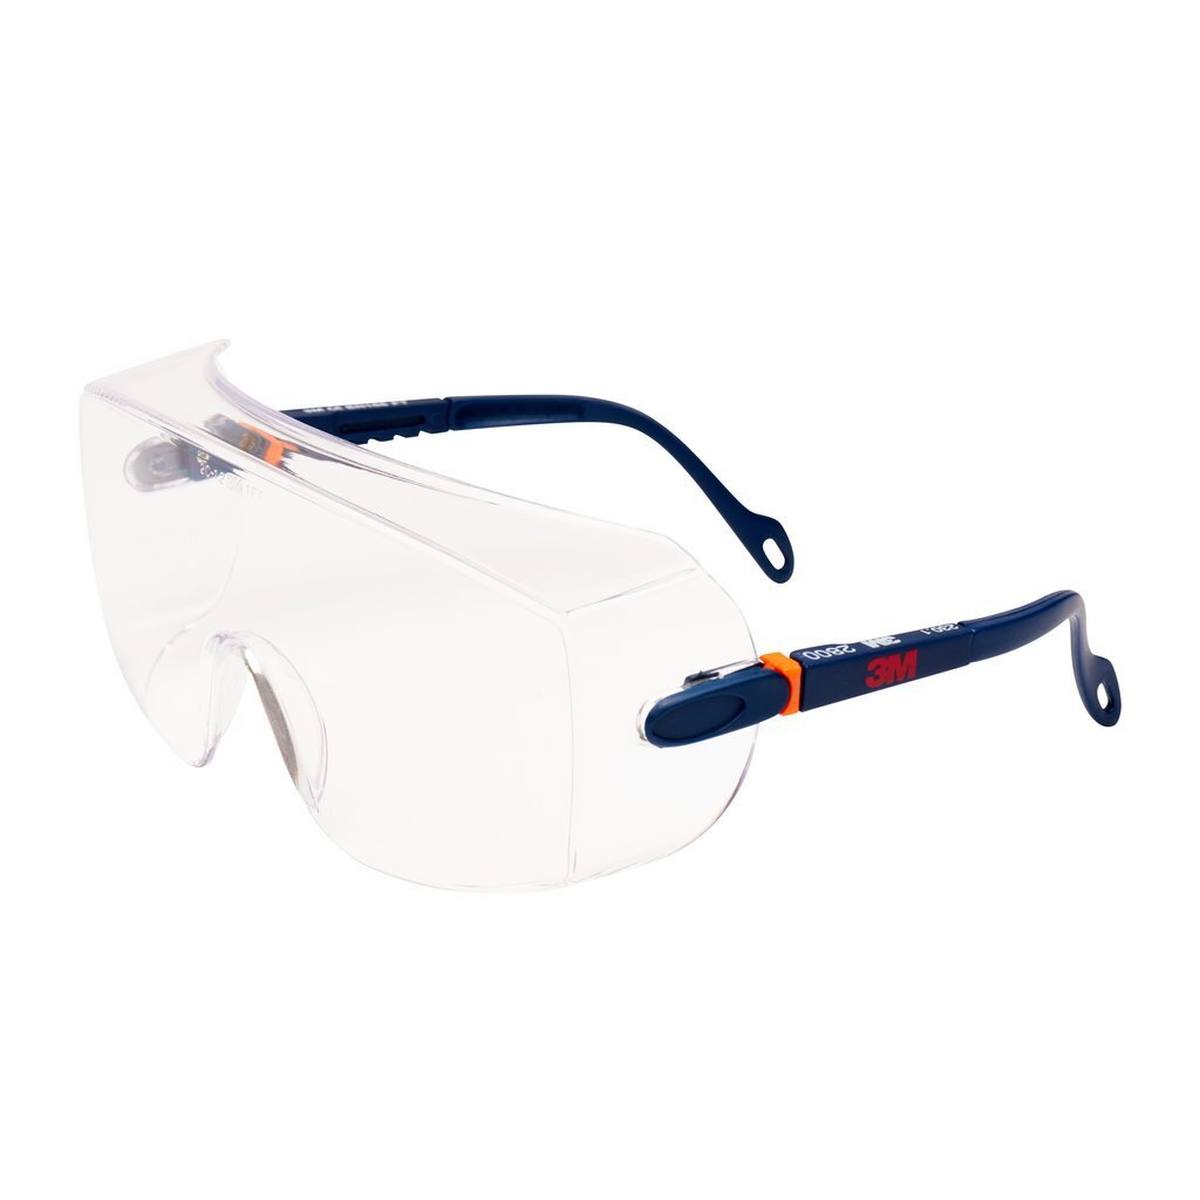 3M 2800 Lunettes de protection AS/UV, PC, transparentes, réglables, idéales comme surlunettes pour les porteurs de lunettes